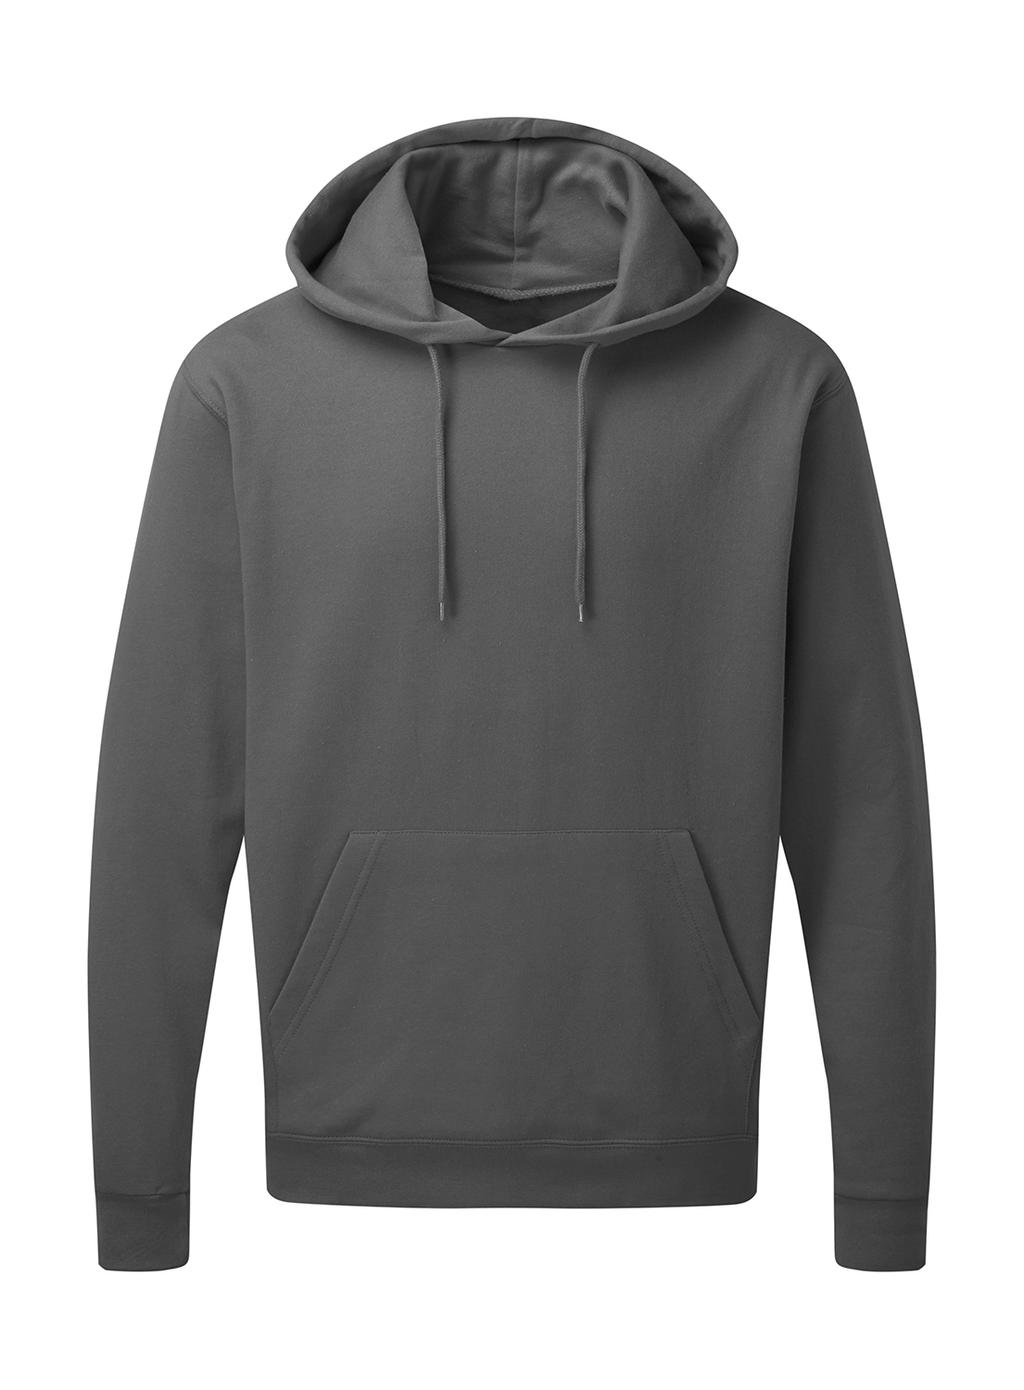  Mens Hooded Sweatshirt in Farbe Grey